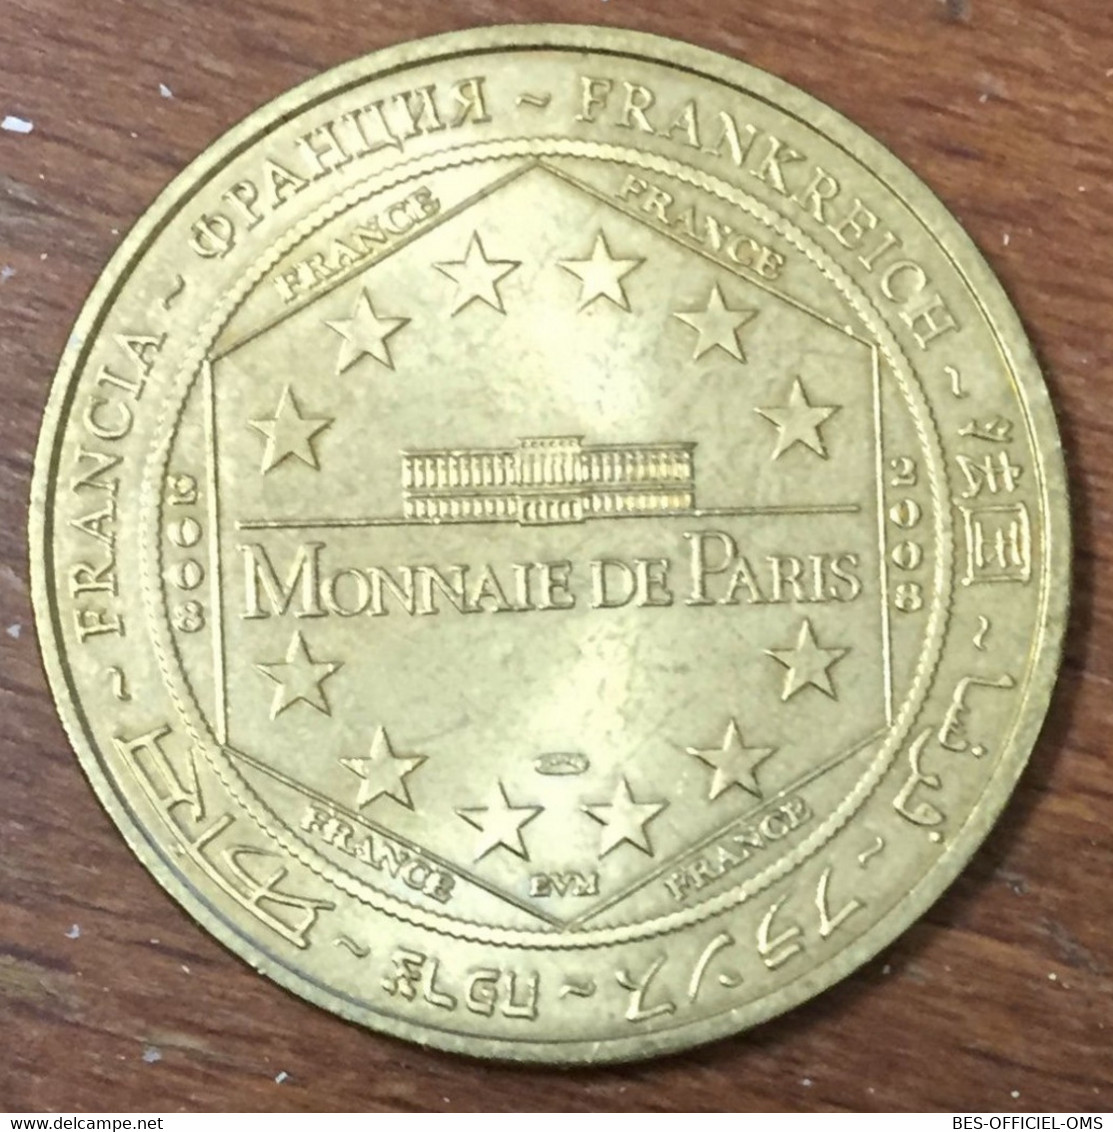 13 MARSEILLE NOTRE-DAME DE LA GARDE 1853 - 2003 MDP 2008 MÉDAILLE MONNAIE DE PARIS JETON TOURISTIQUE MEDALS COINS TOKENS - 2008